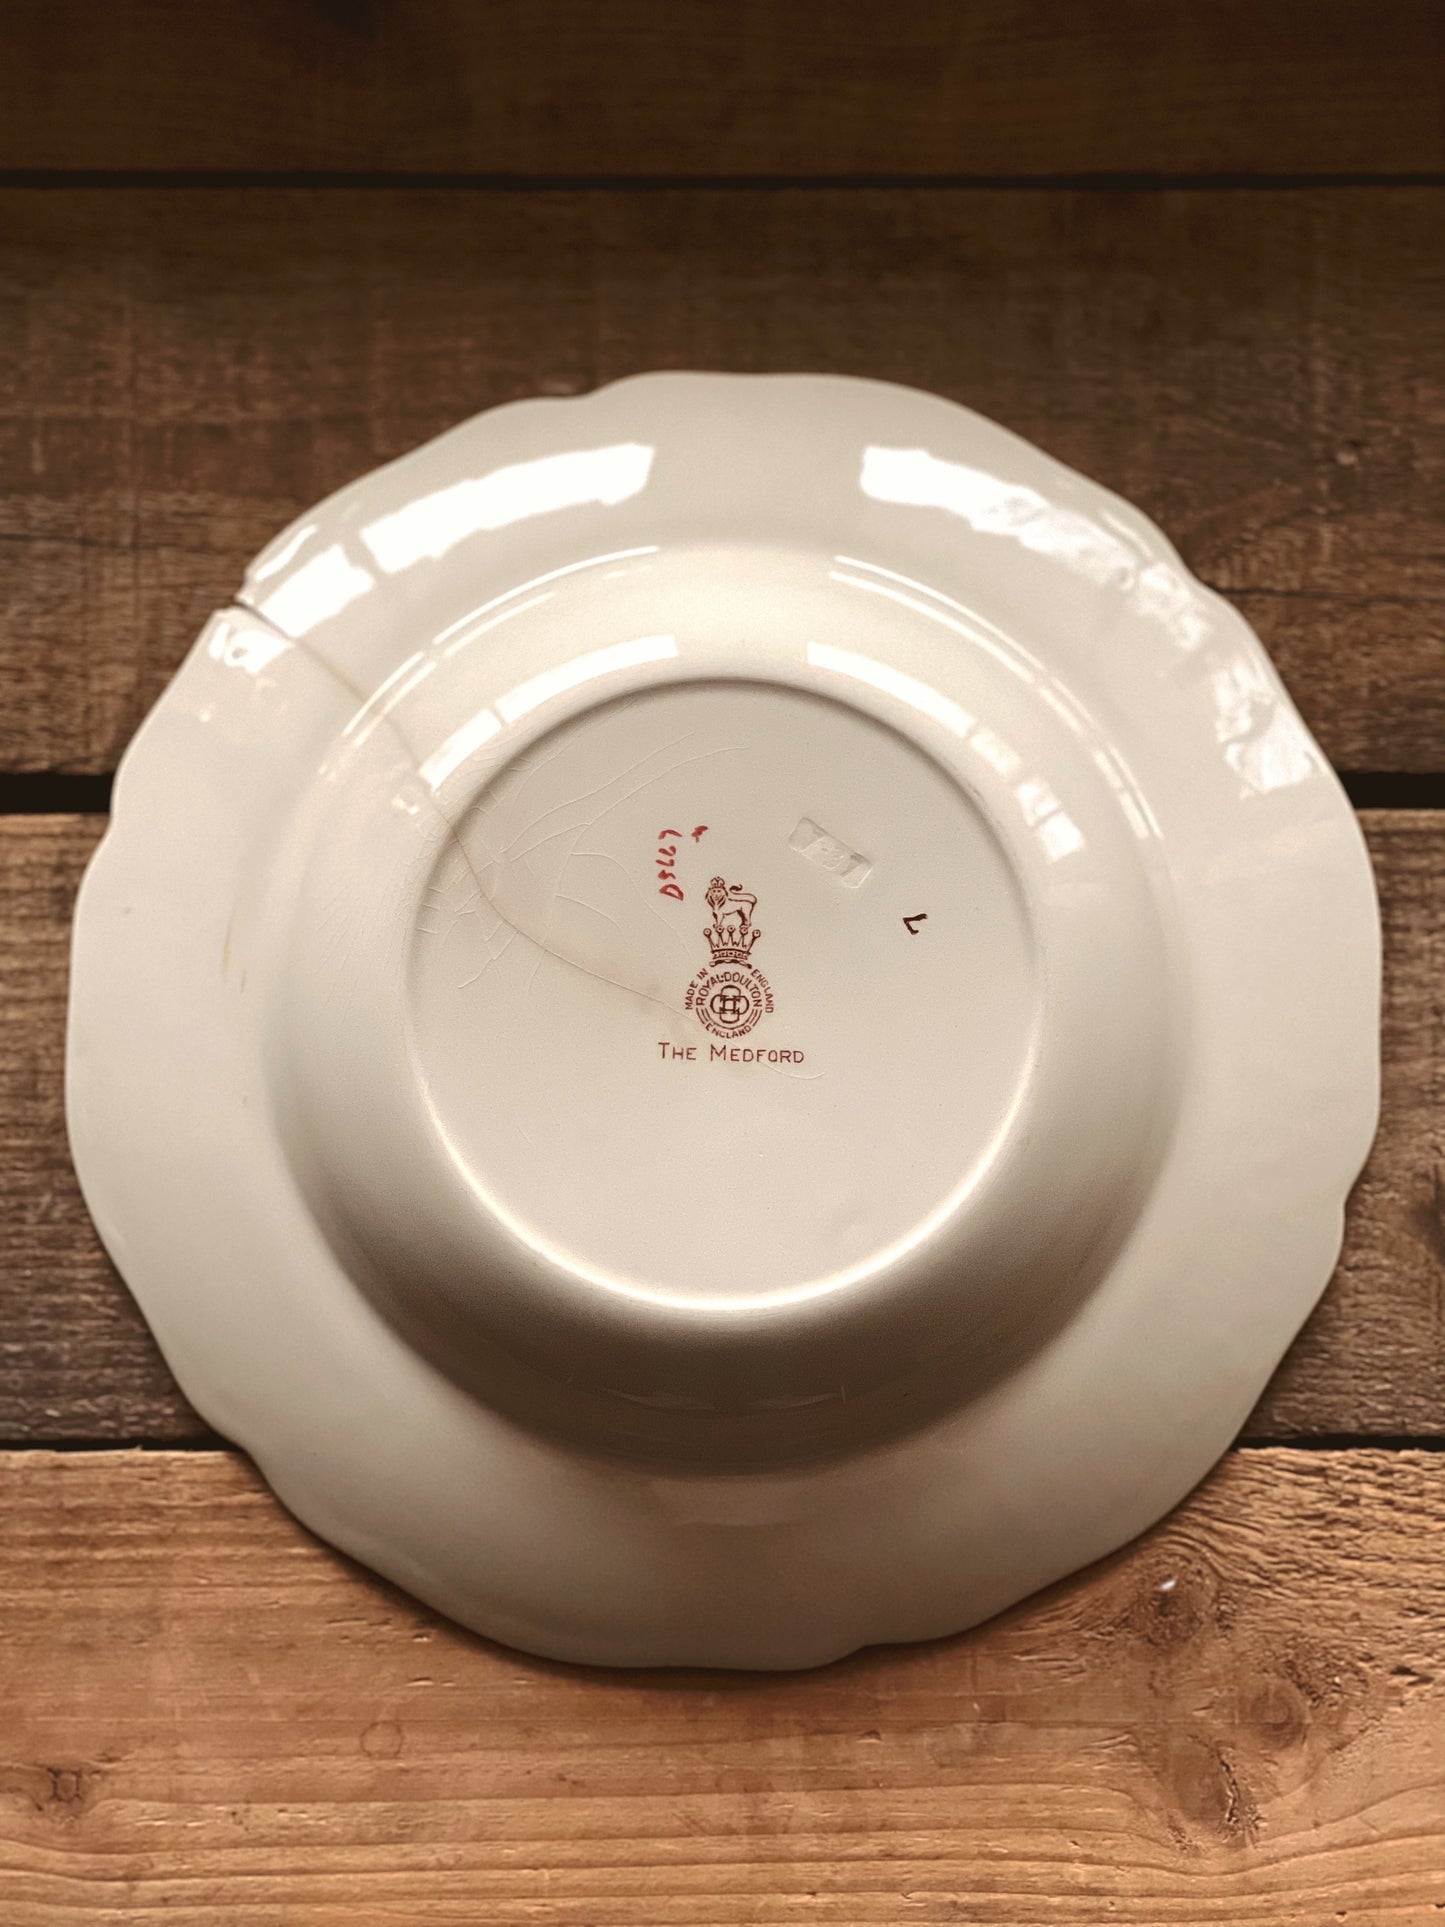 Vintage Royal Doulton The Medford Rimmed Soup Bowl